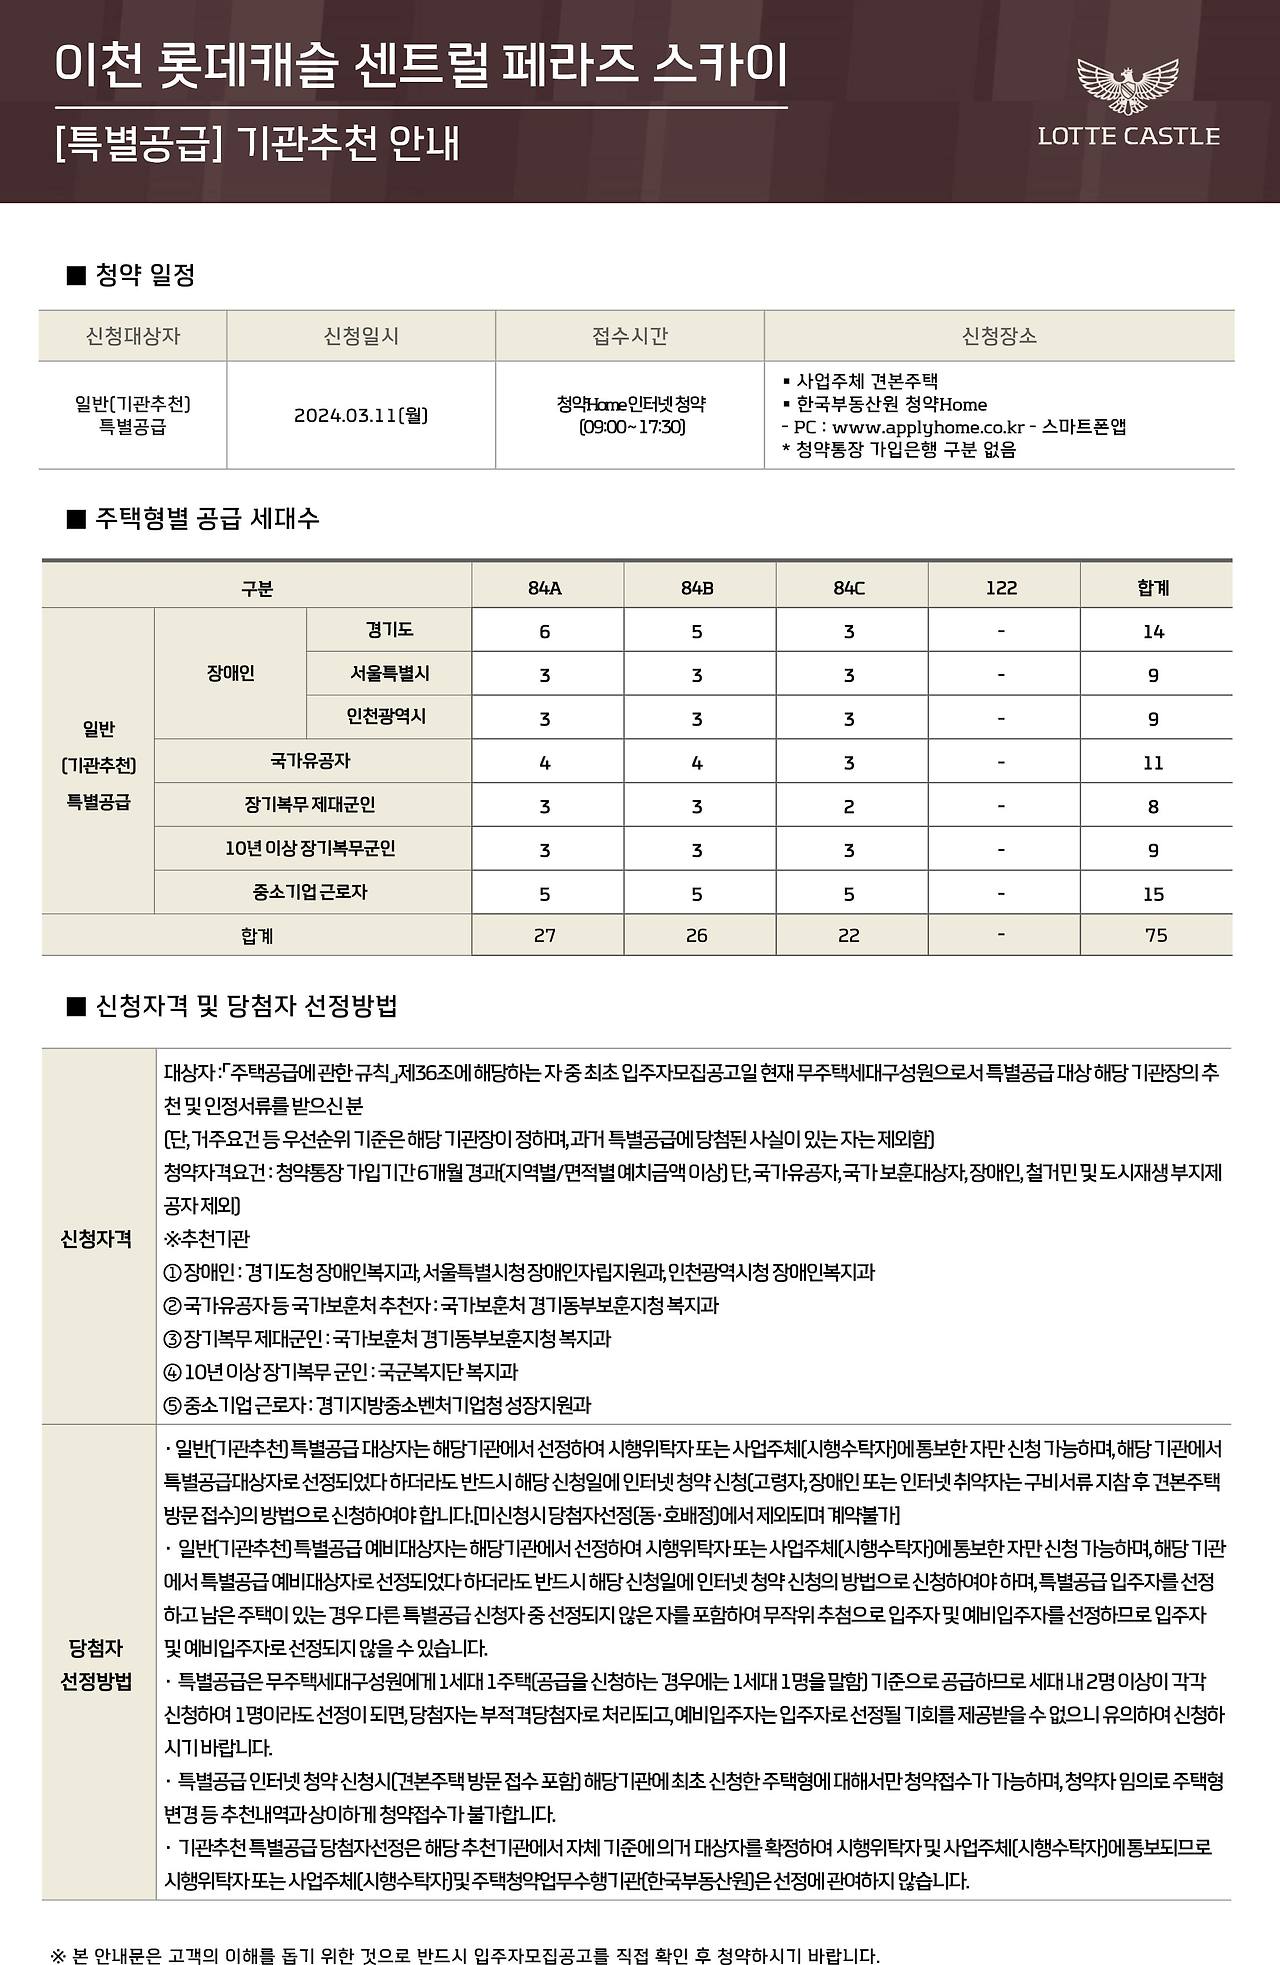 이천 롯데캐슬 센트럴 페라즈 스카이 아파트-청약안내문-특별공급-기관추천